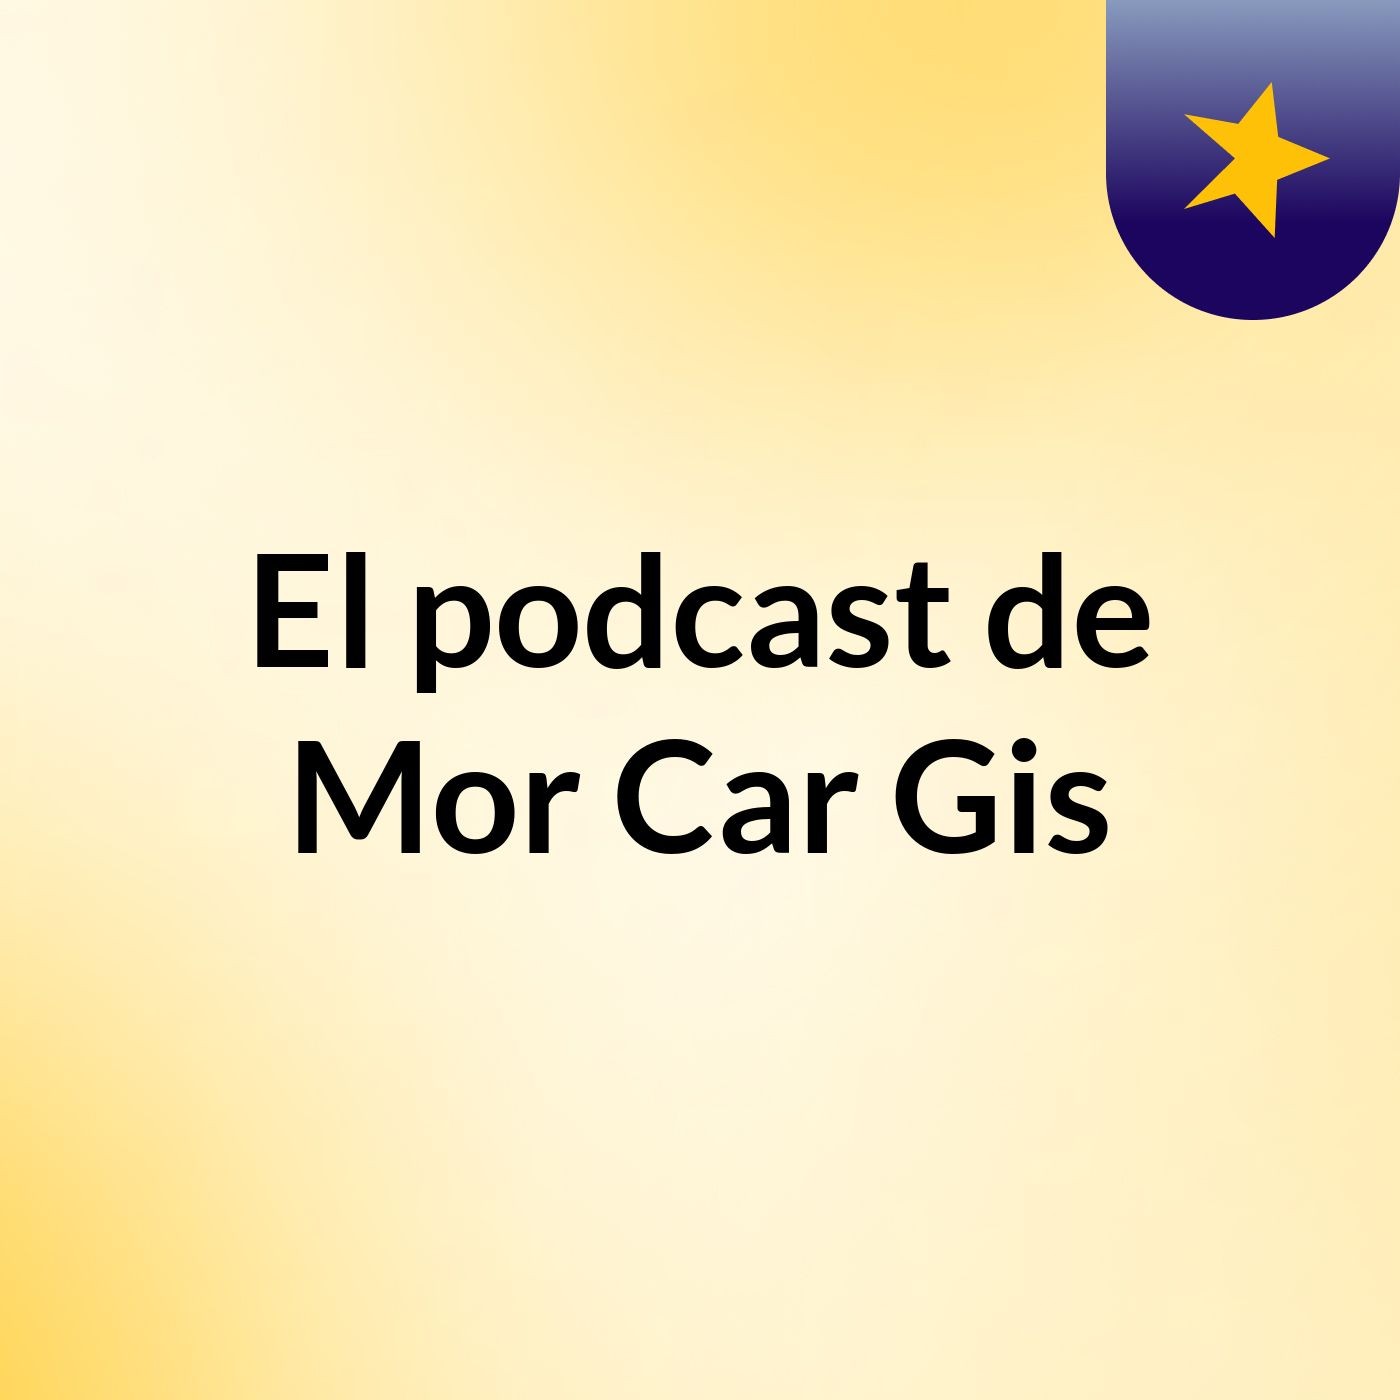 El podcast de Mor Car Gis